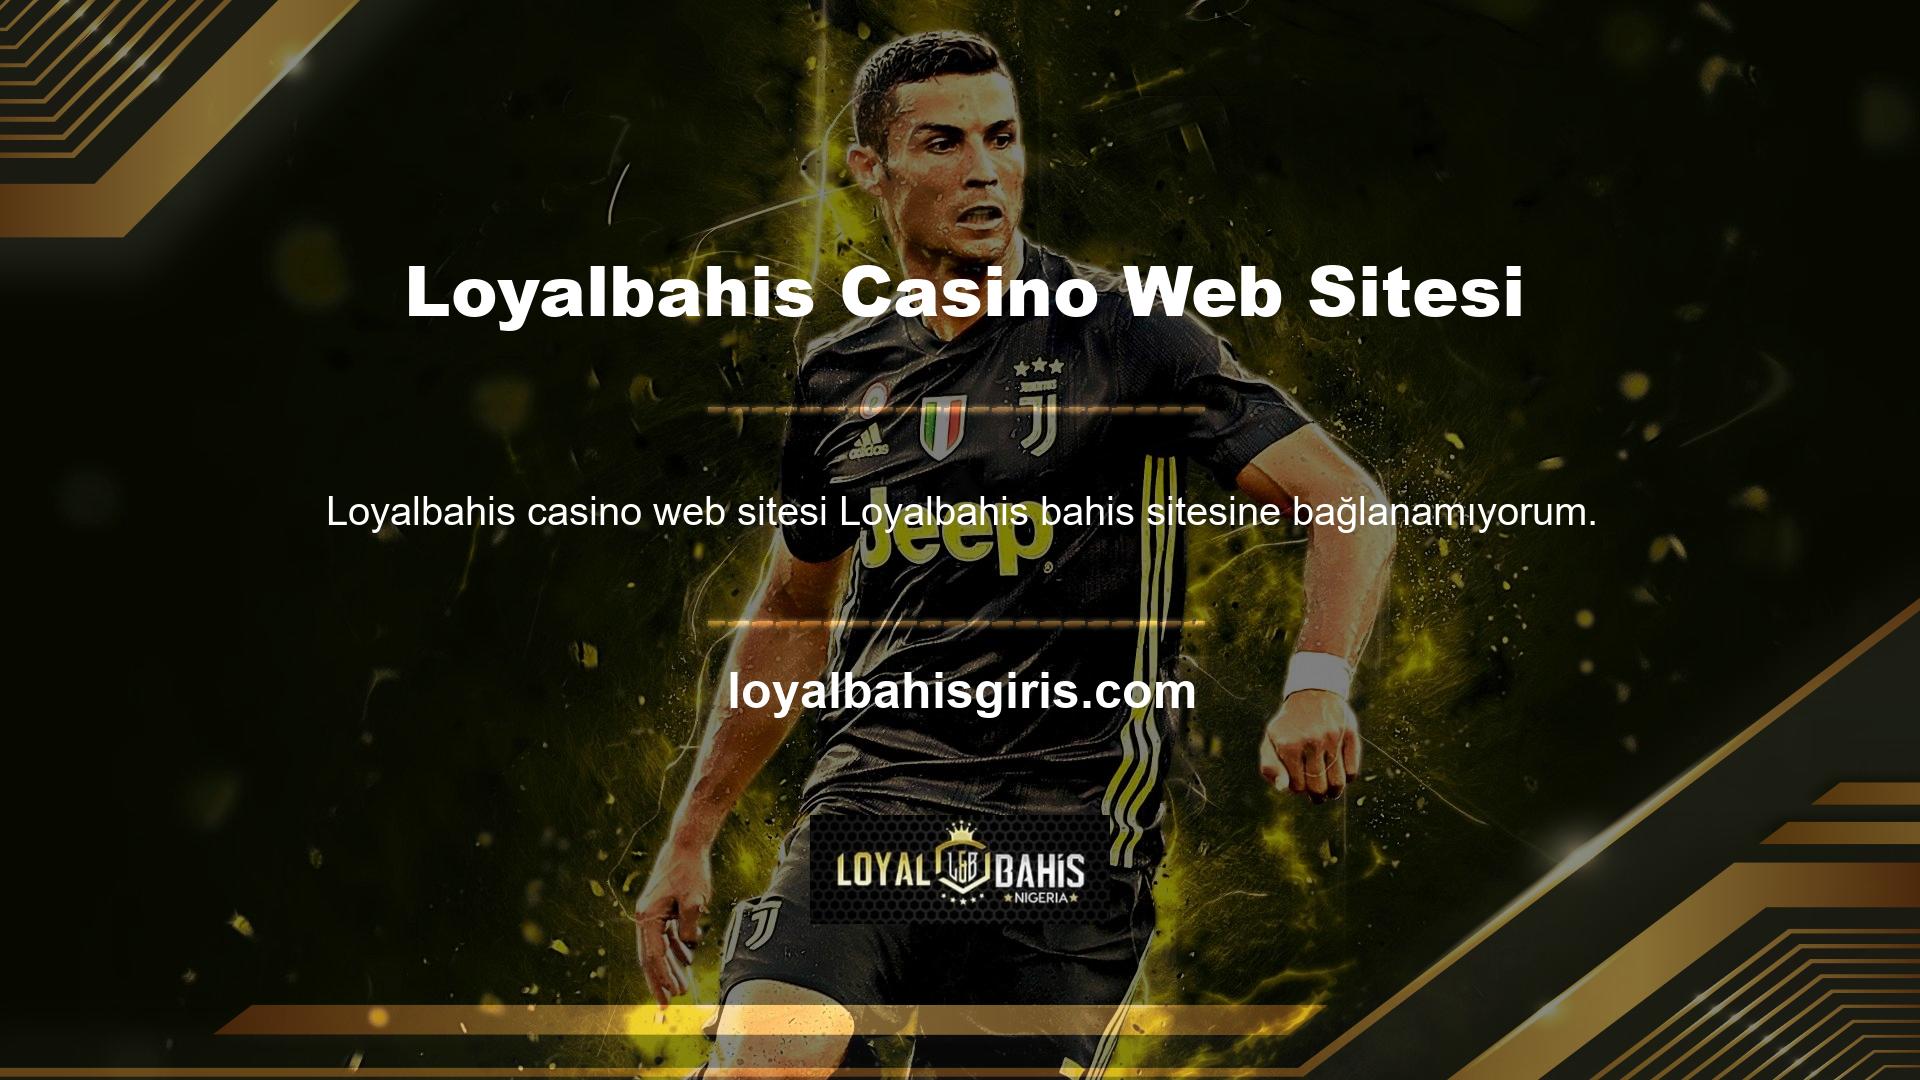 Loyalbahis Casino web sitesi kapalı mı sorusuna cevabımız evet